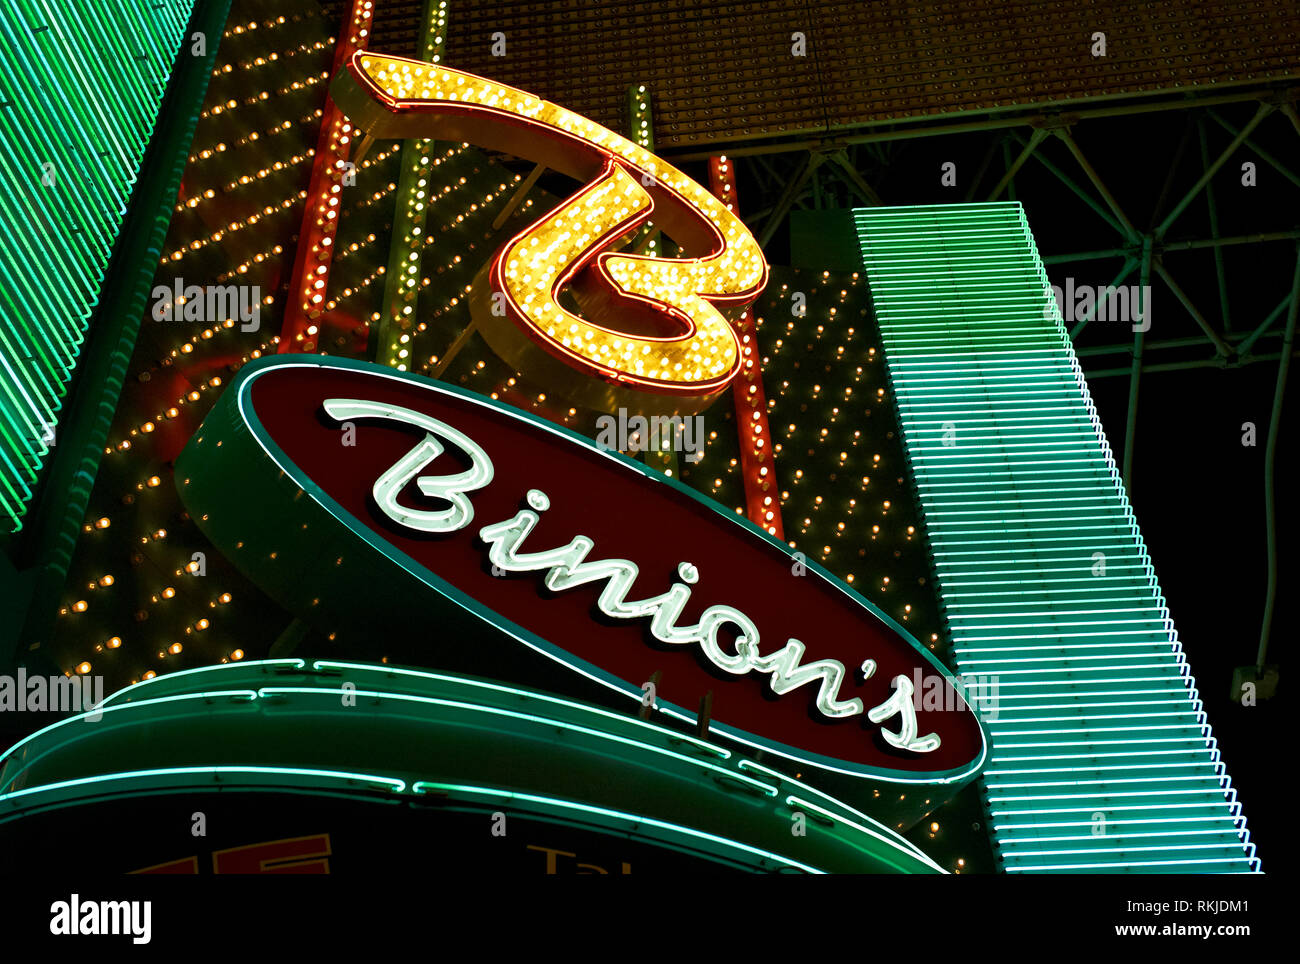 Las Vegas, Nevada - El 06 de julio de 2009: el cartel de neón que ilumina por encima de la entrada del Binion's Horseshoe Casino en la famosa calle Freemont. Foto de stock